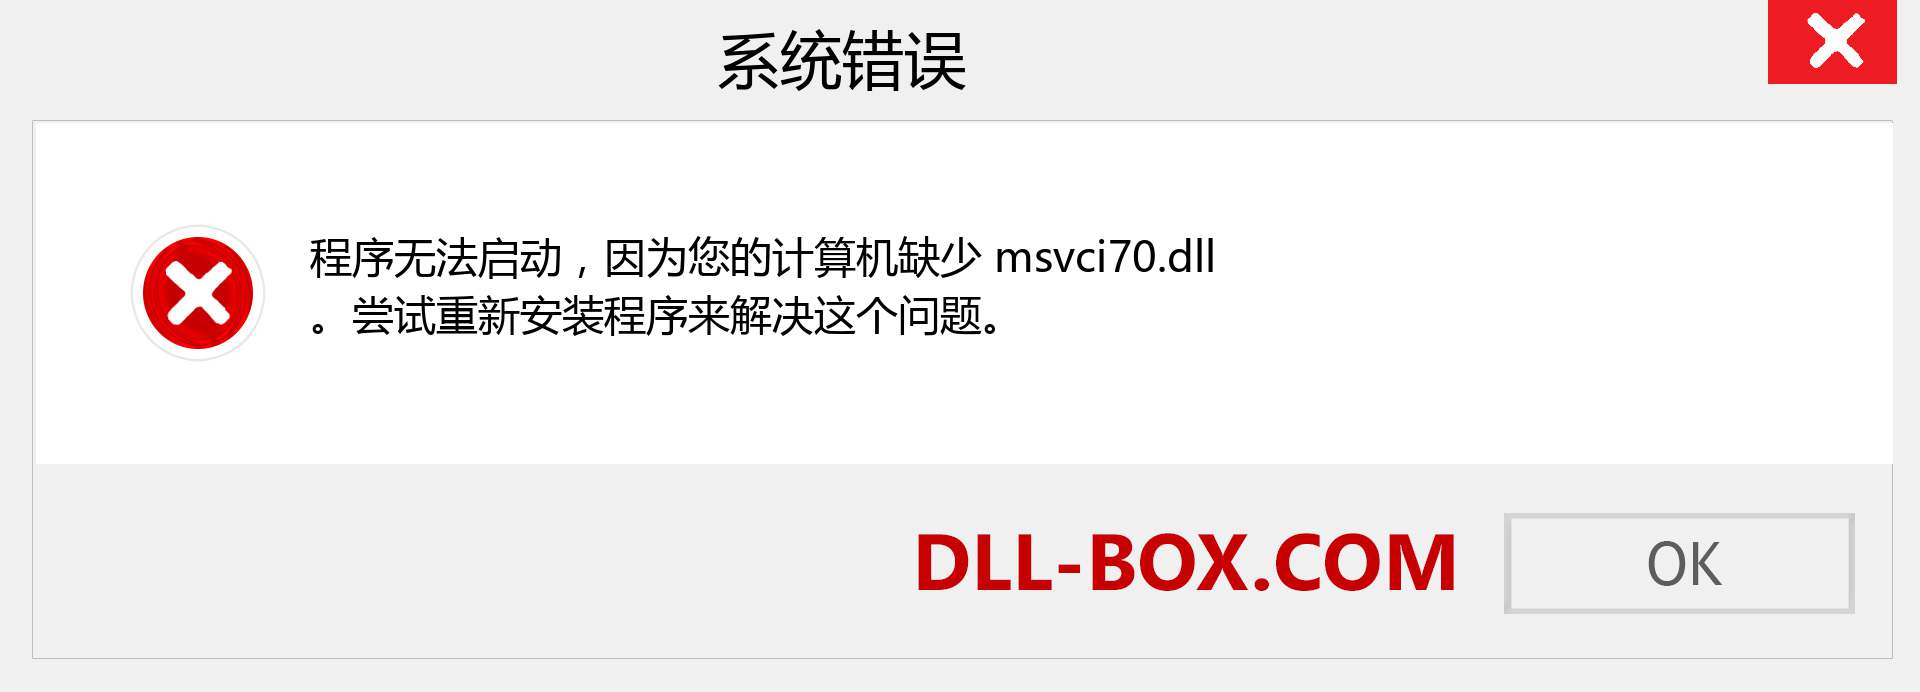 msvci70.dll 文件丢失？。 适用于 Windows 7、8、10 的下载 - 修复 Windows、照片、图像上的 msvci70 dll 丢失错误